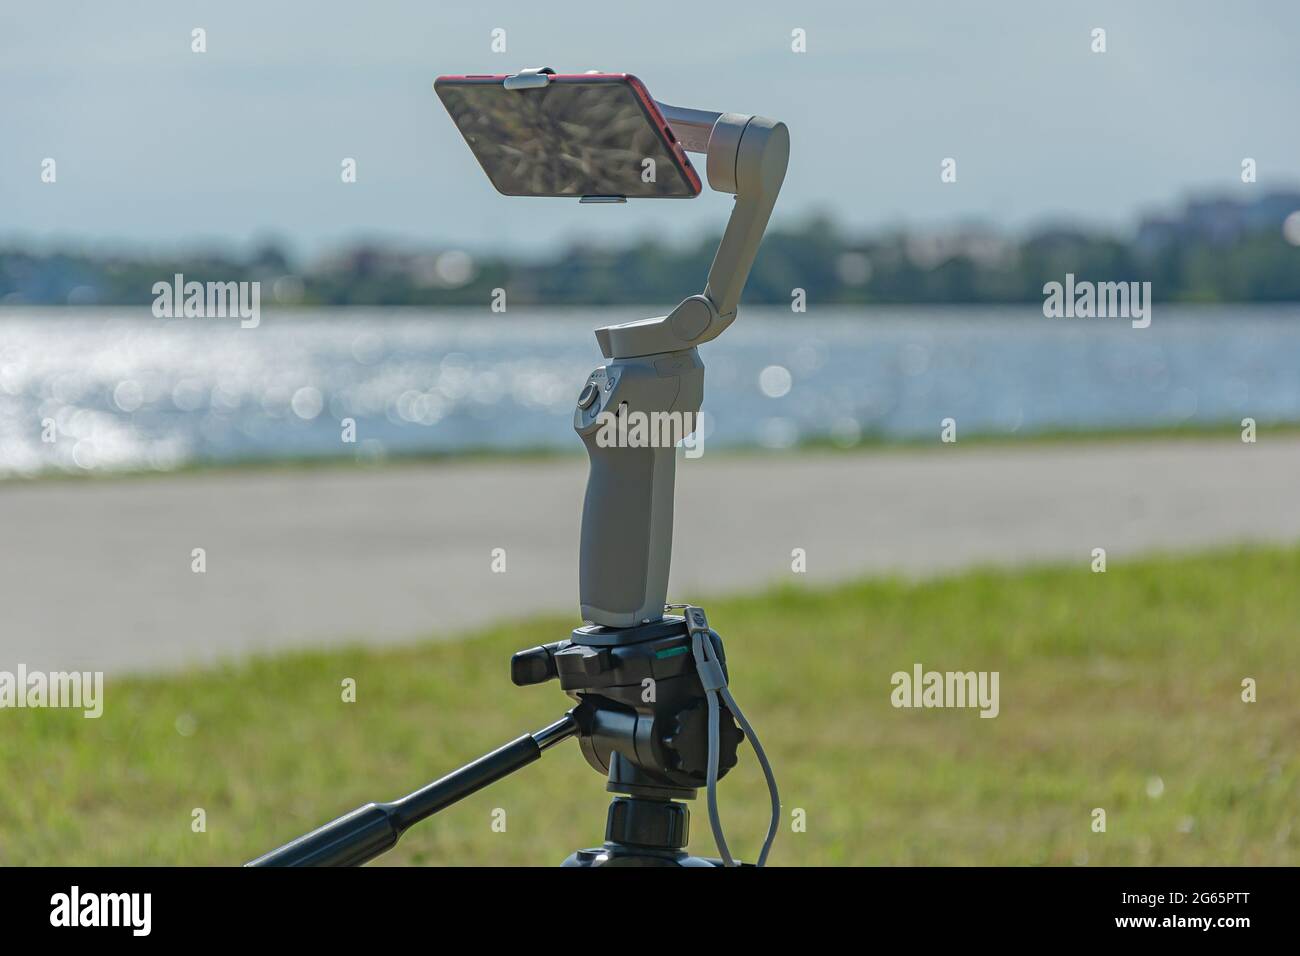 Das Smartphone ist auf einer Studicam montiert und auf einem Stativ montiert, einem verschwommenen Hintergrund mit Bokeh-Elementen. Stock Foto. Stockfoto